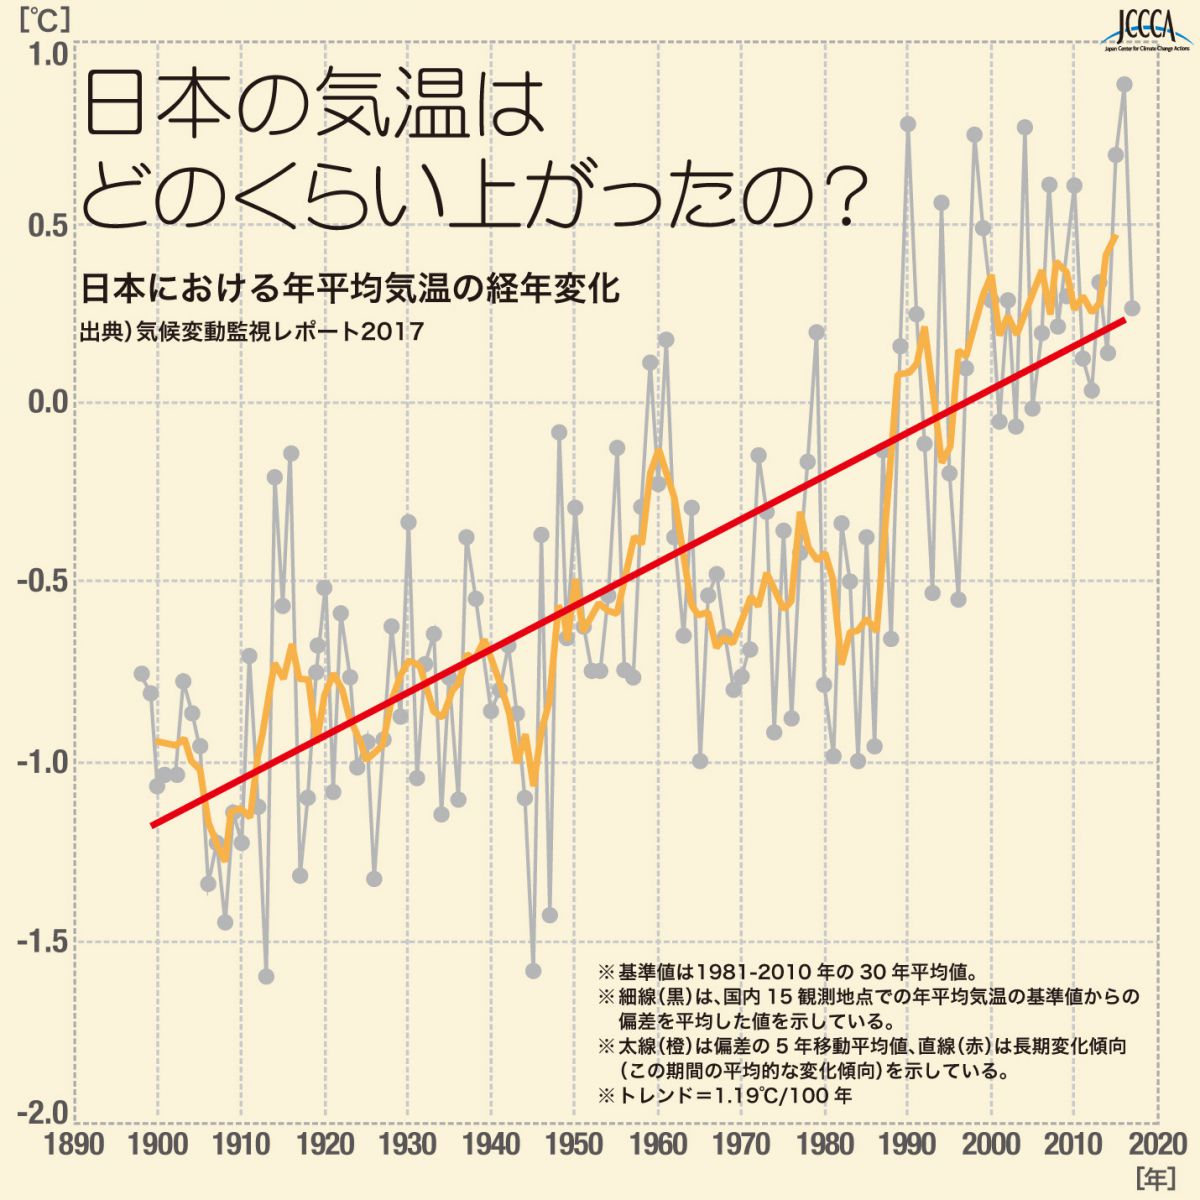 6 1 日本における年平均気温の経年変化 Jccca 全国地球温暖化防止活動推進センター